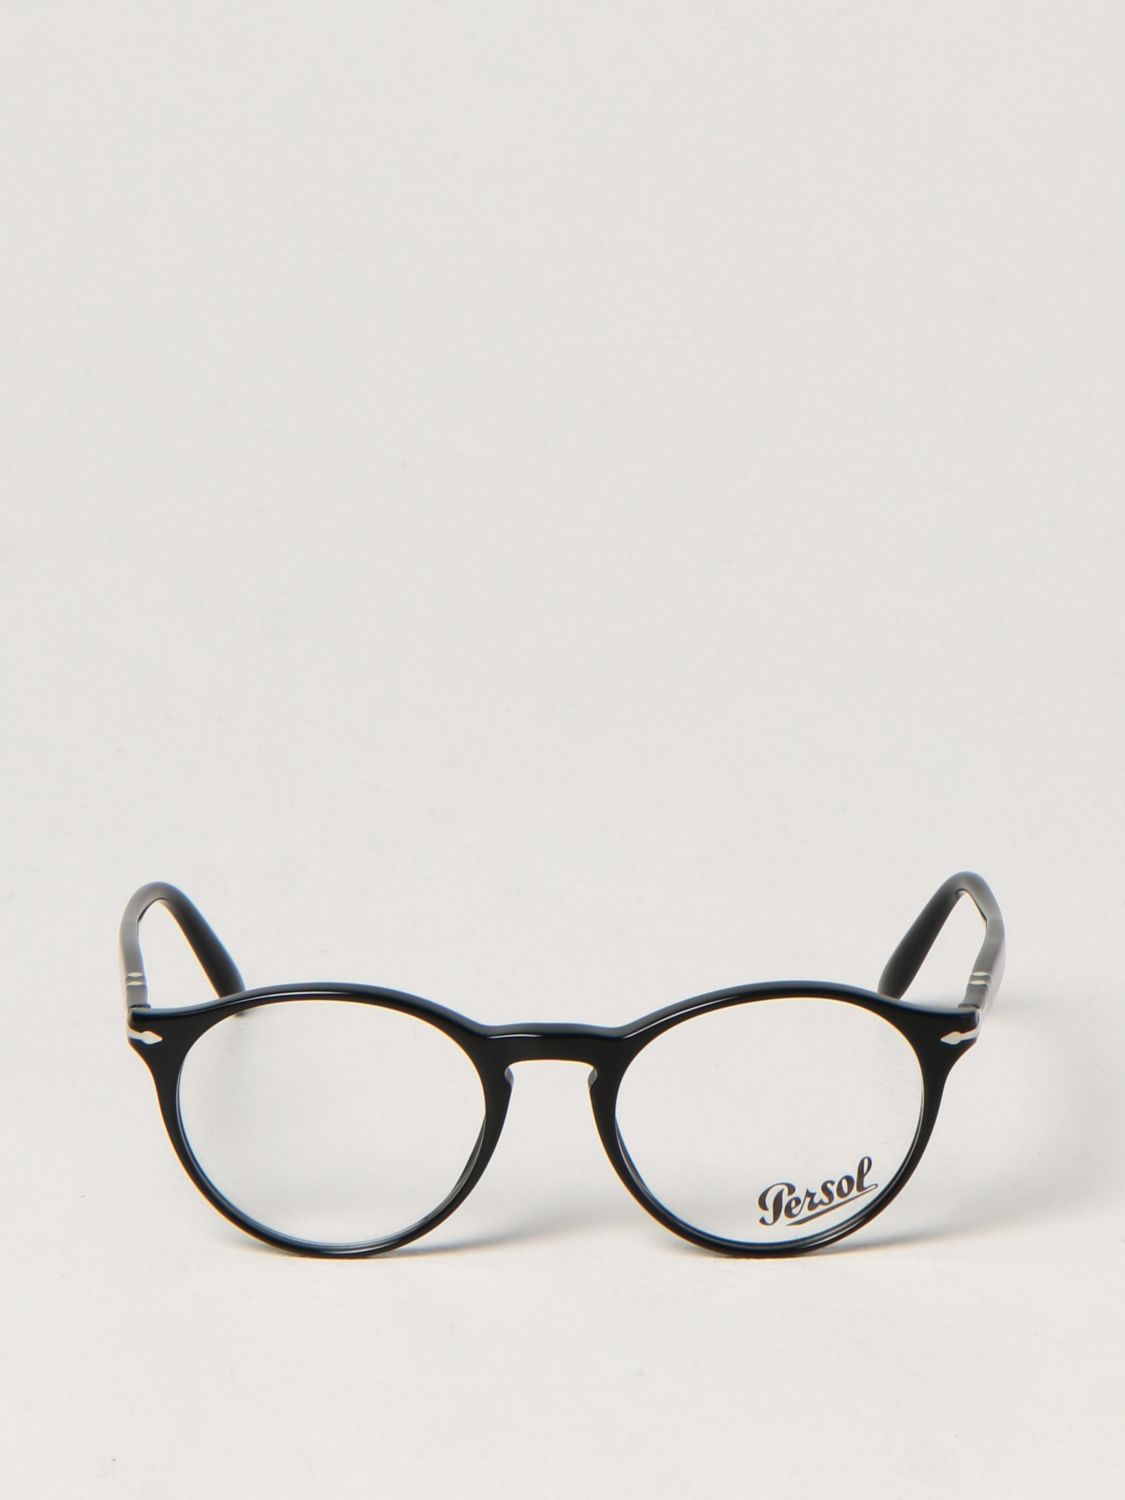 Brille Persol: Persol Herren Brille schwarz 2